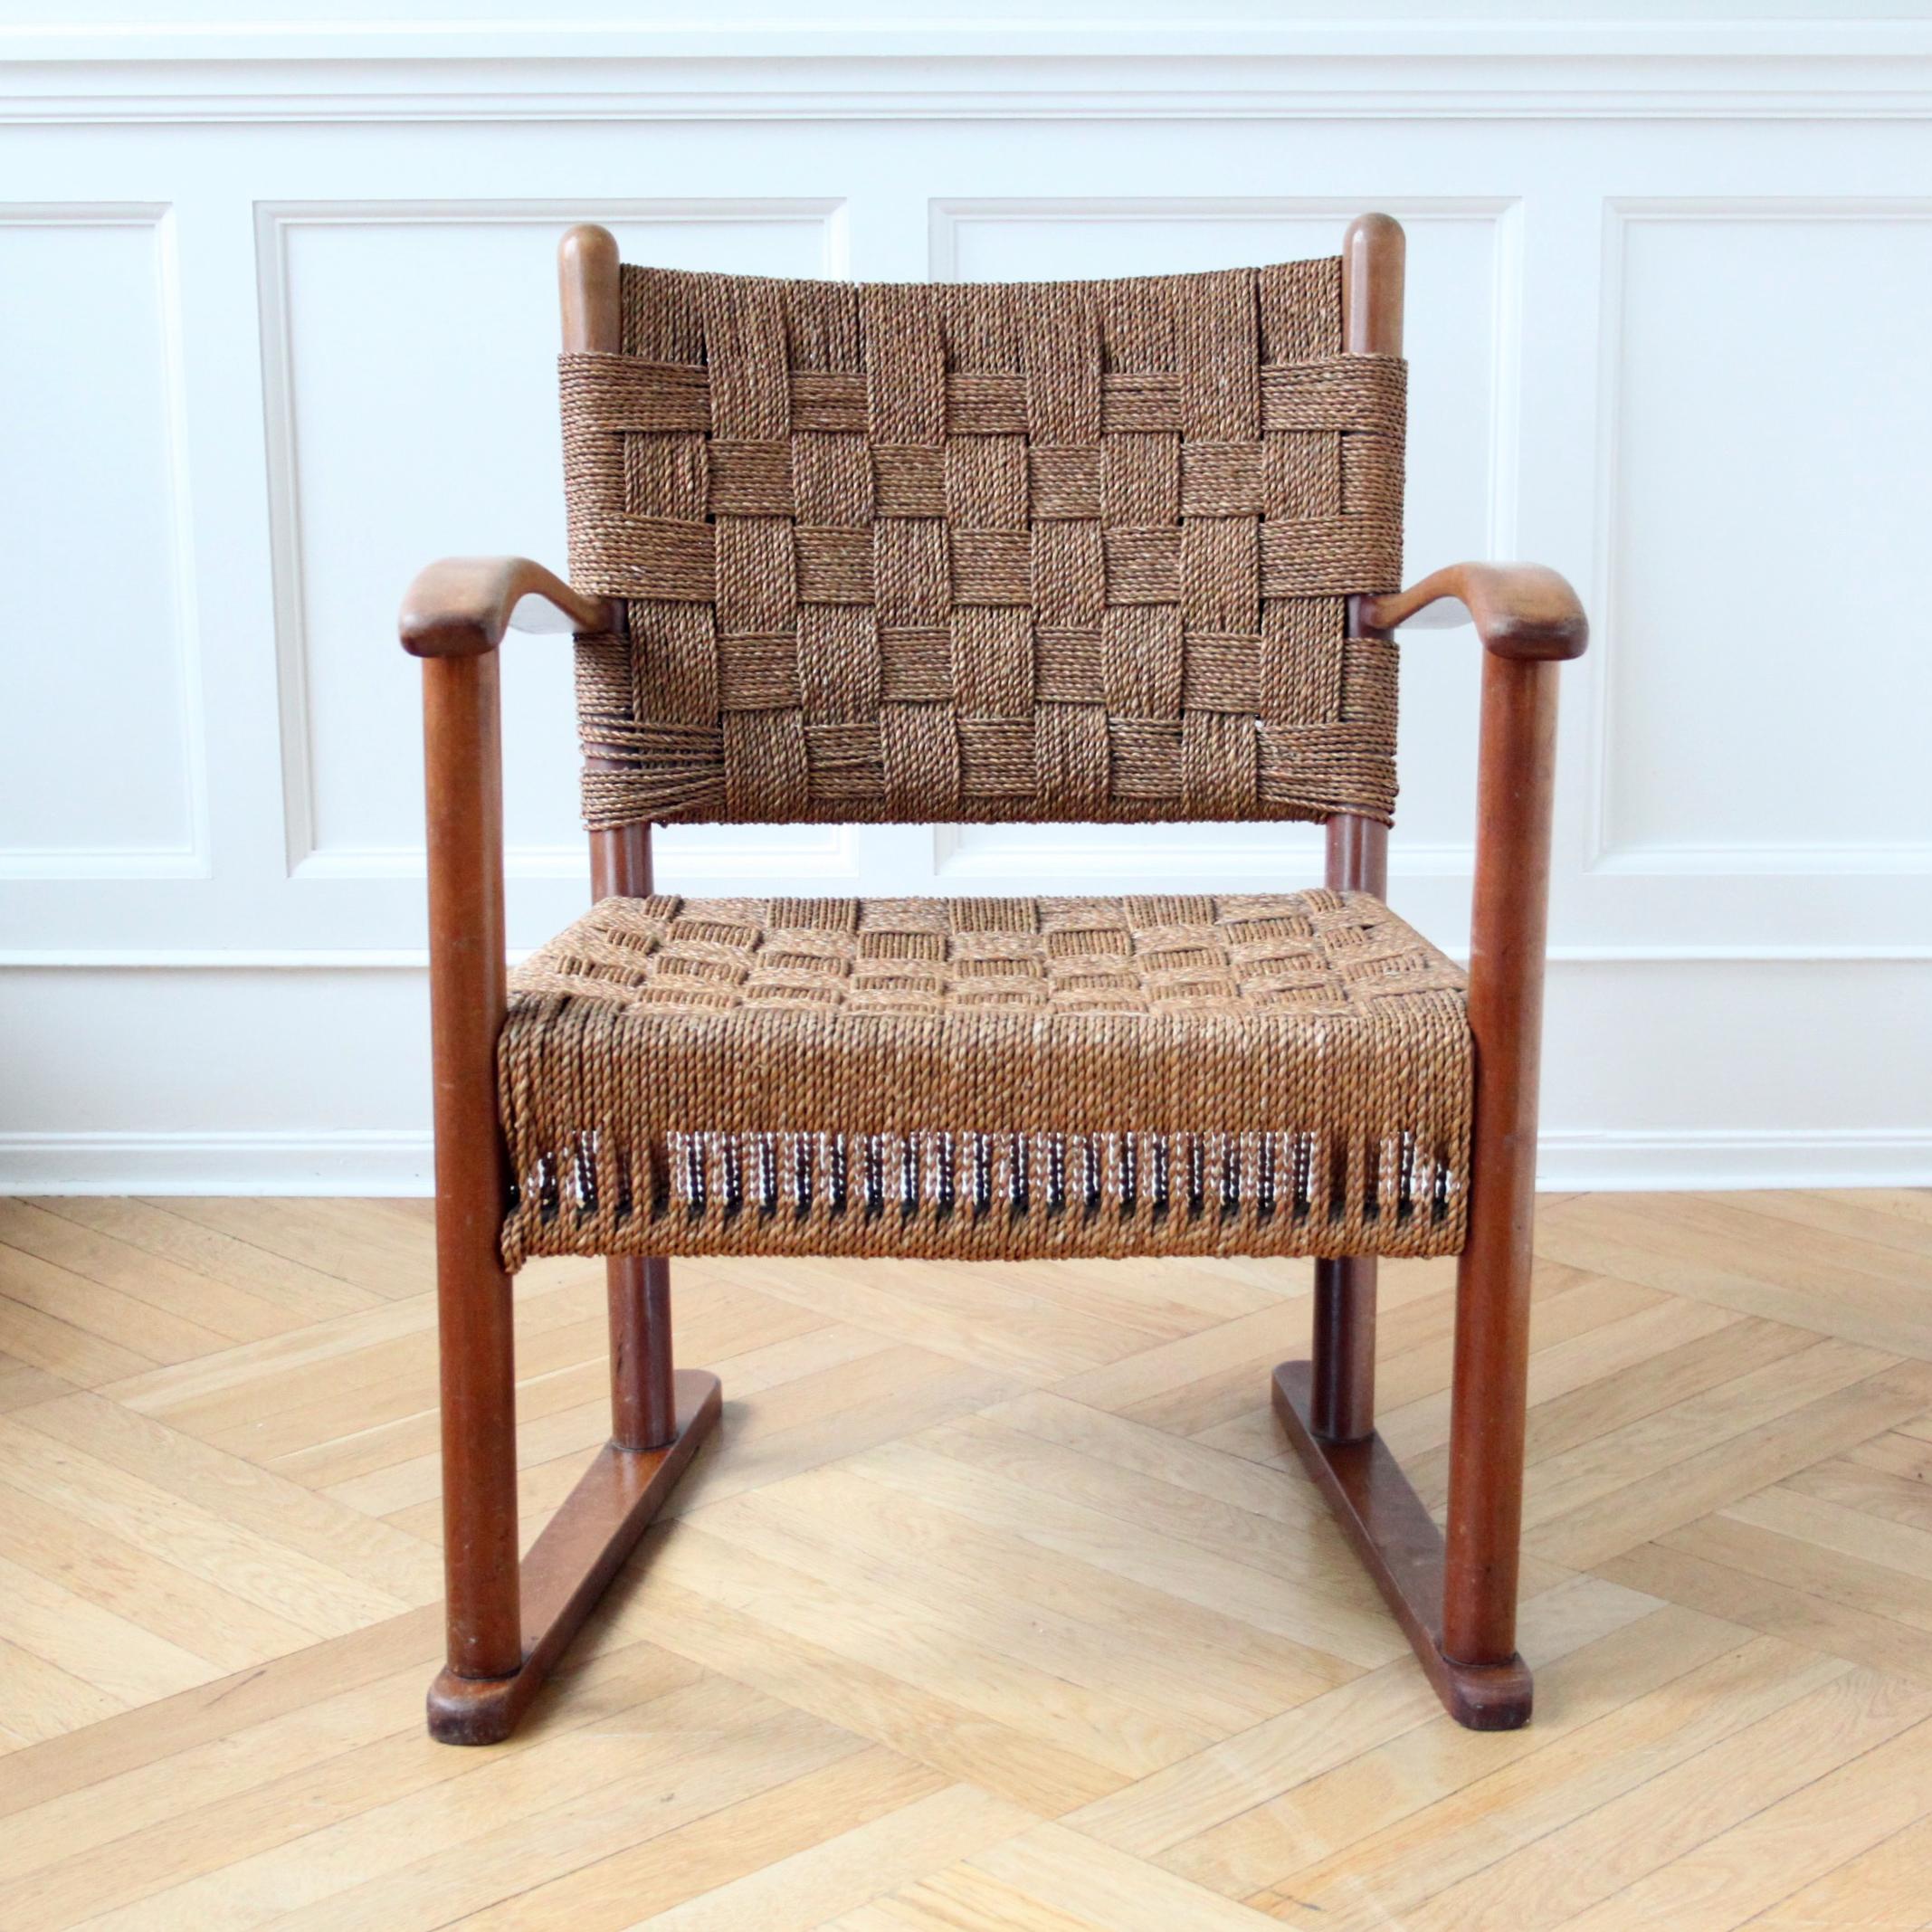 FRITZ HANSEN   &  ATTR. FRITS SCHLEGEL
THE SCANDINAVIAN MODERN

Superbe chaise de salon en hêtre et gazon de mer fabriquée par l'ébéniste danois Fritz Hansen dans les années 1940, dont le design est attribué à Frits Schlegel. 

Une chaise très rare.